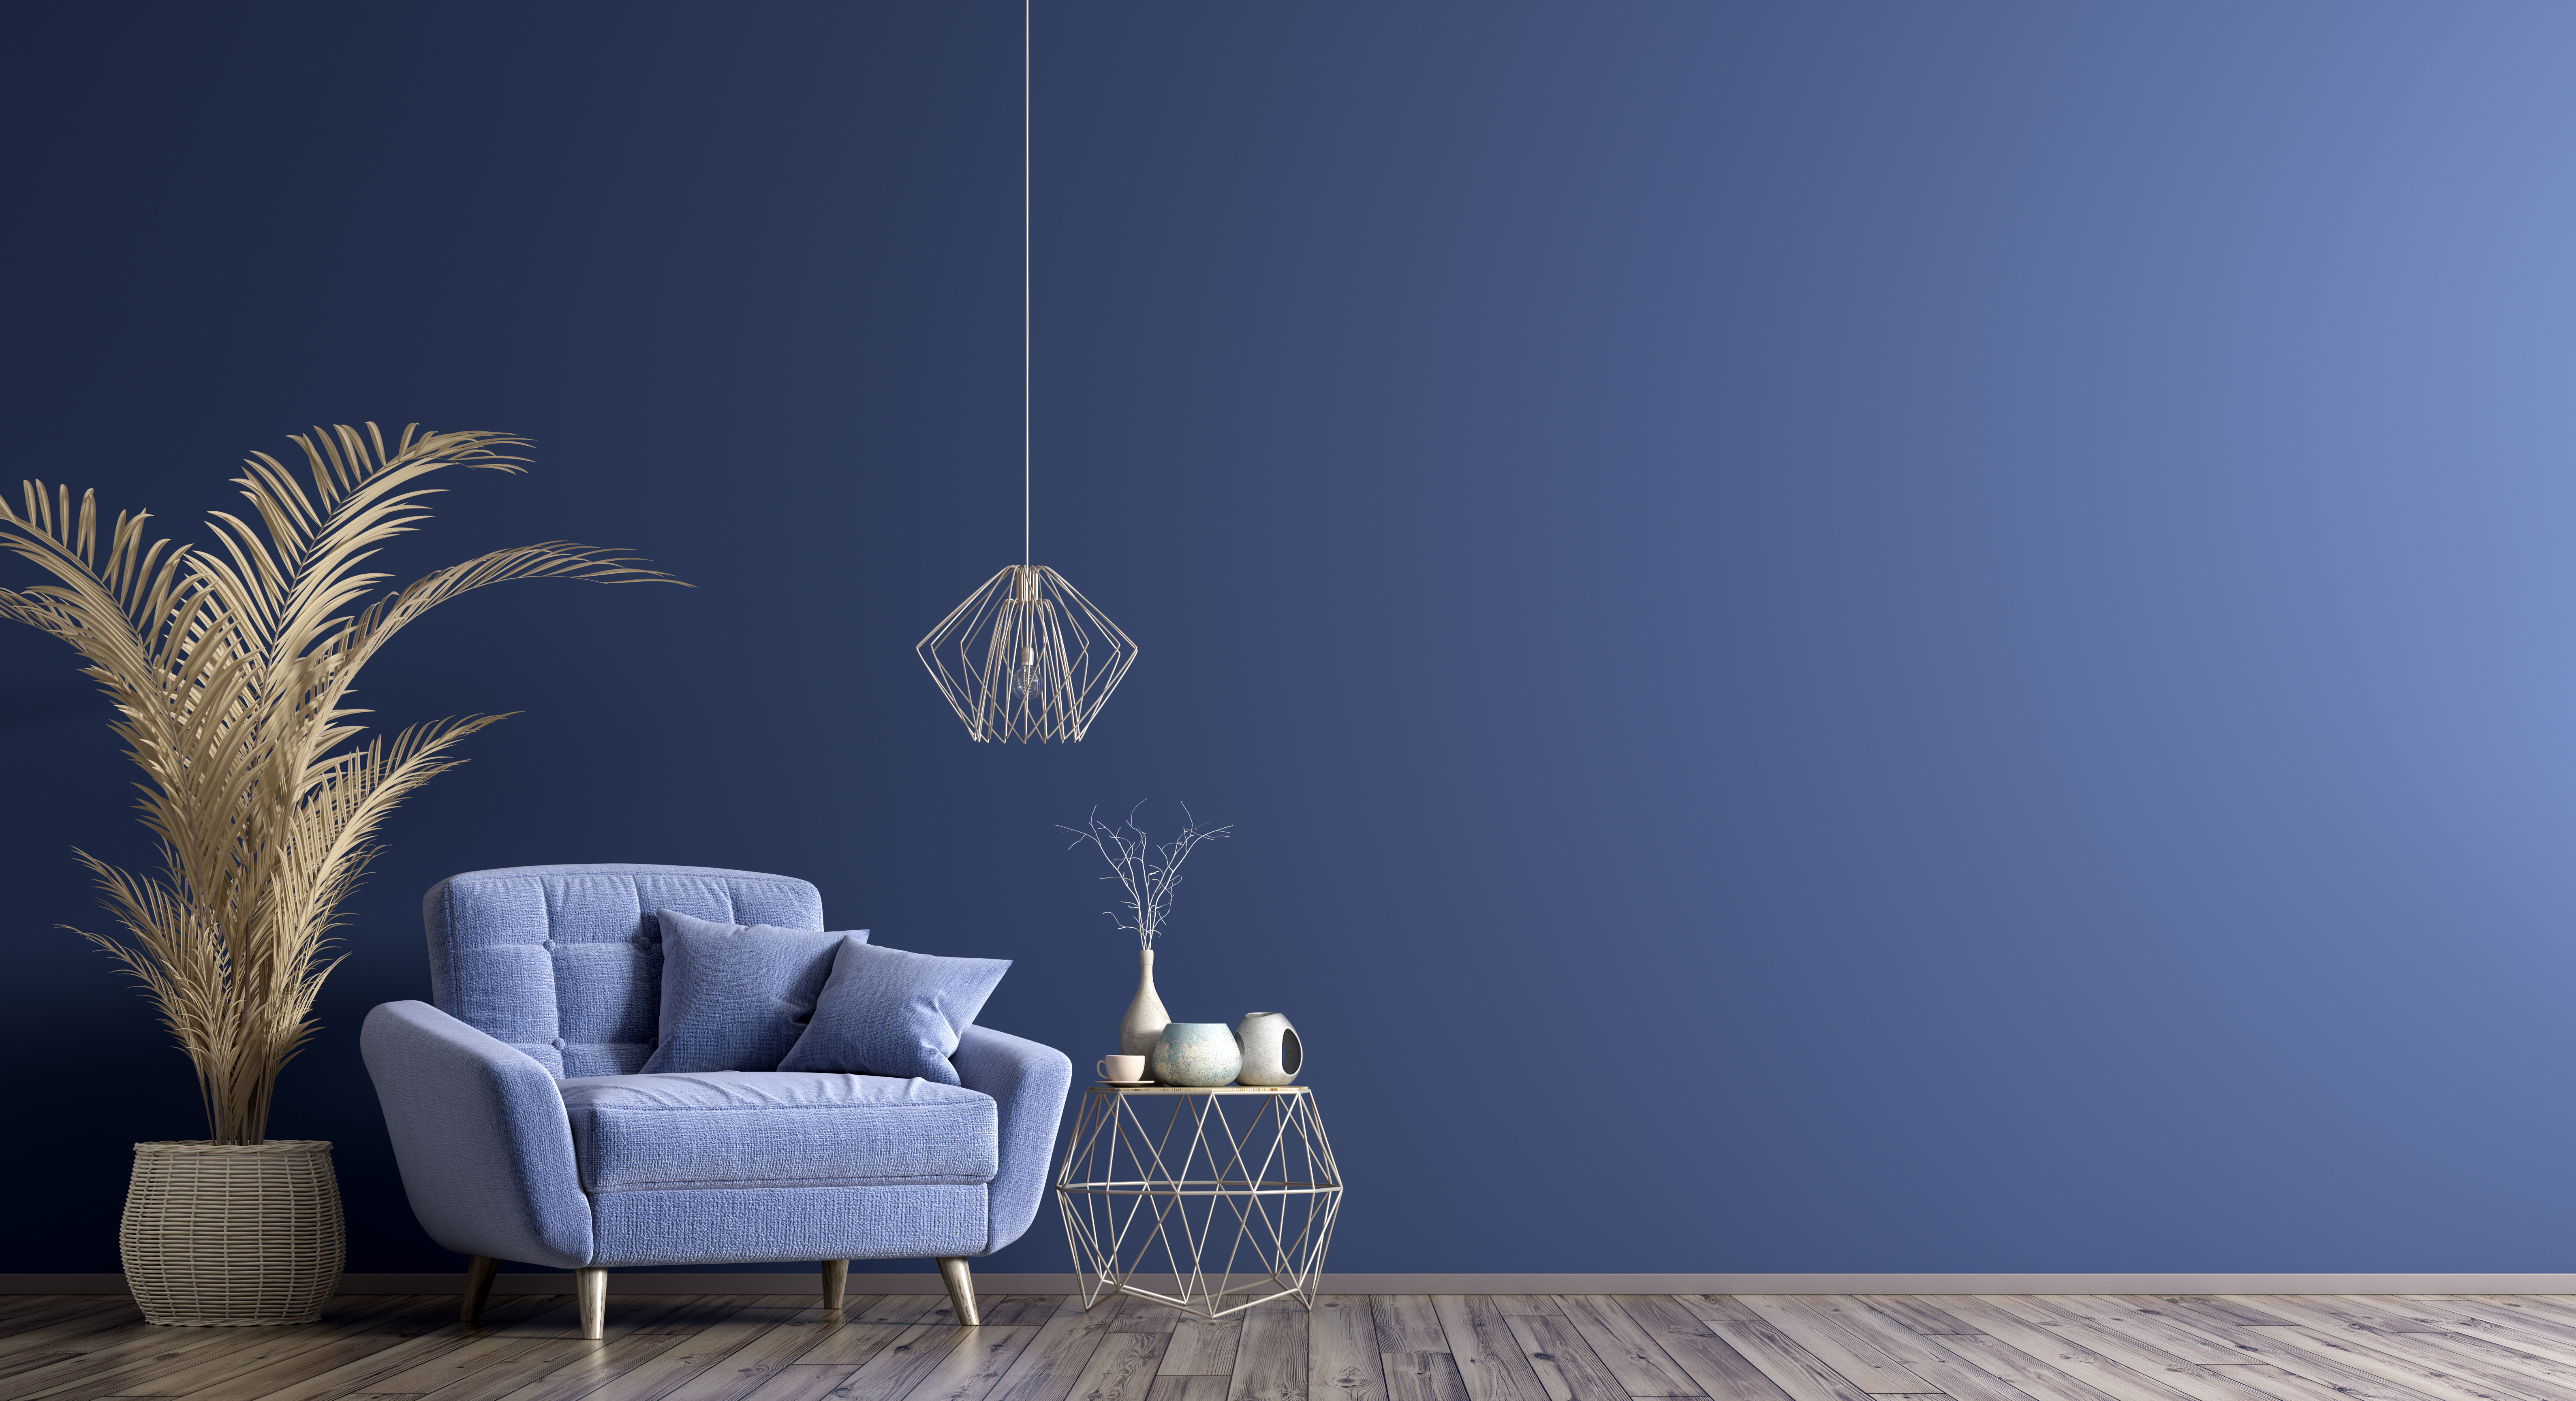 <p>2. Експериментирайте с цветовете. Ако боядисате стаята в тъмен цвят, той ще придаде дълбочина на обстановката. В съчетание с мебели и аксесоари в светли тонове крайният резултат ще бъде наистина впечатляващ.</p>